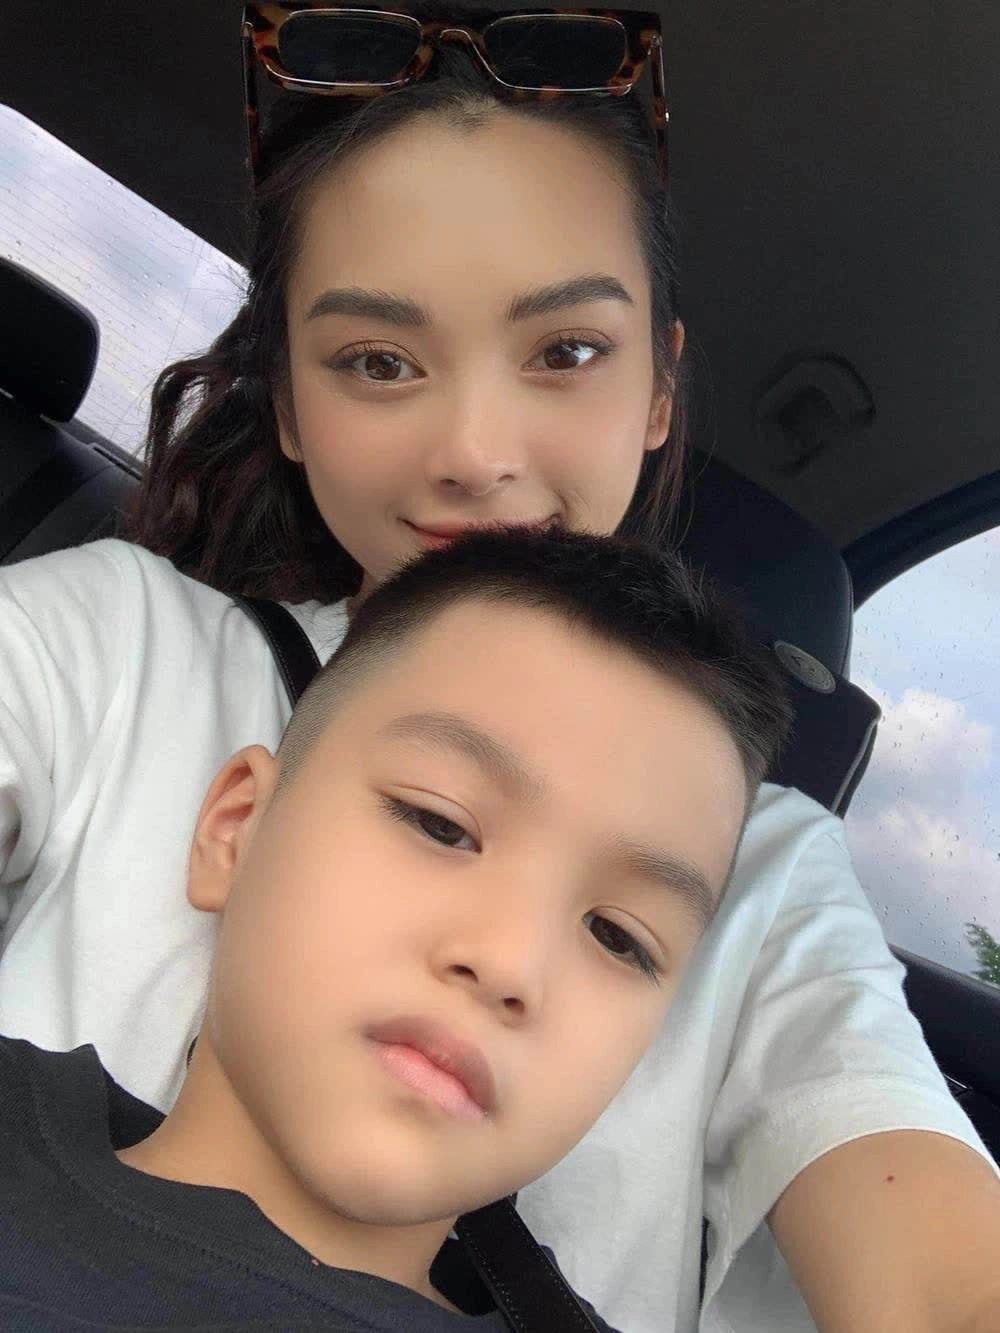  
Quỳnh Lương không chỉ chăm sóc tốt cho con trai mà còn dư dả kinh tế lo cho gia đình. (Ảnh: FB Quỳnh Lương)